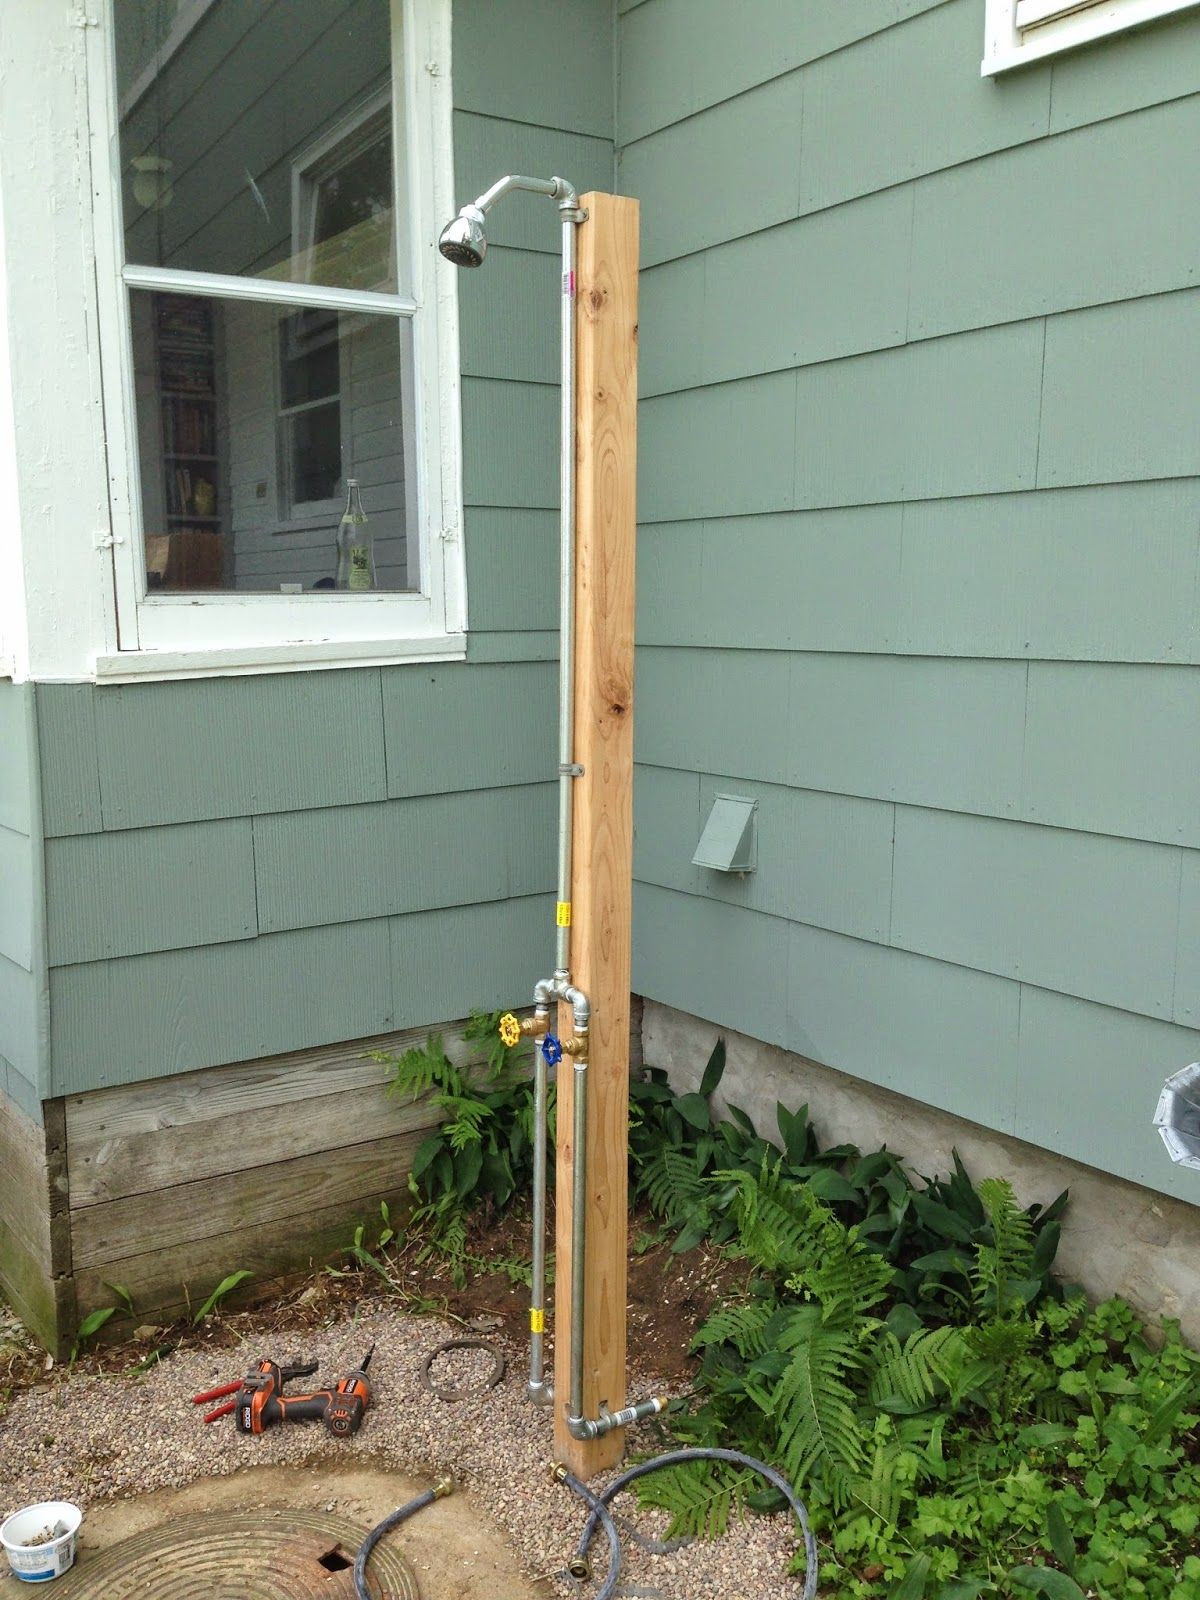 DIY Outdoor Shower Plumbing
 The Outdoor Shower 2 0